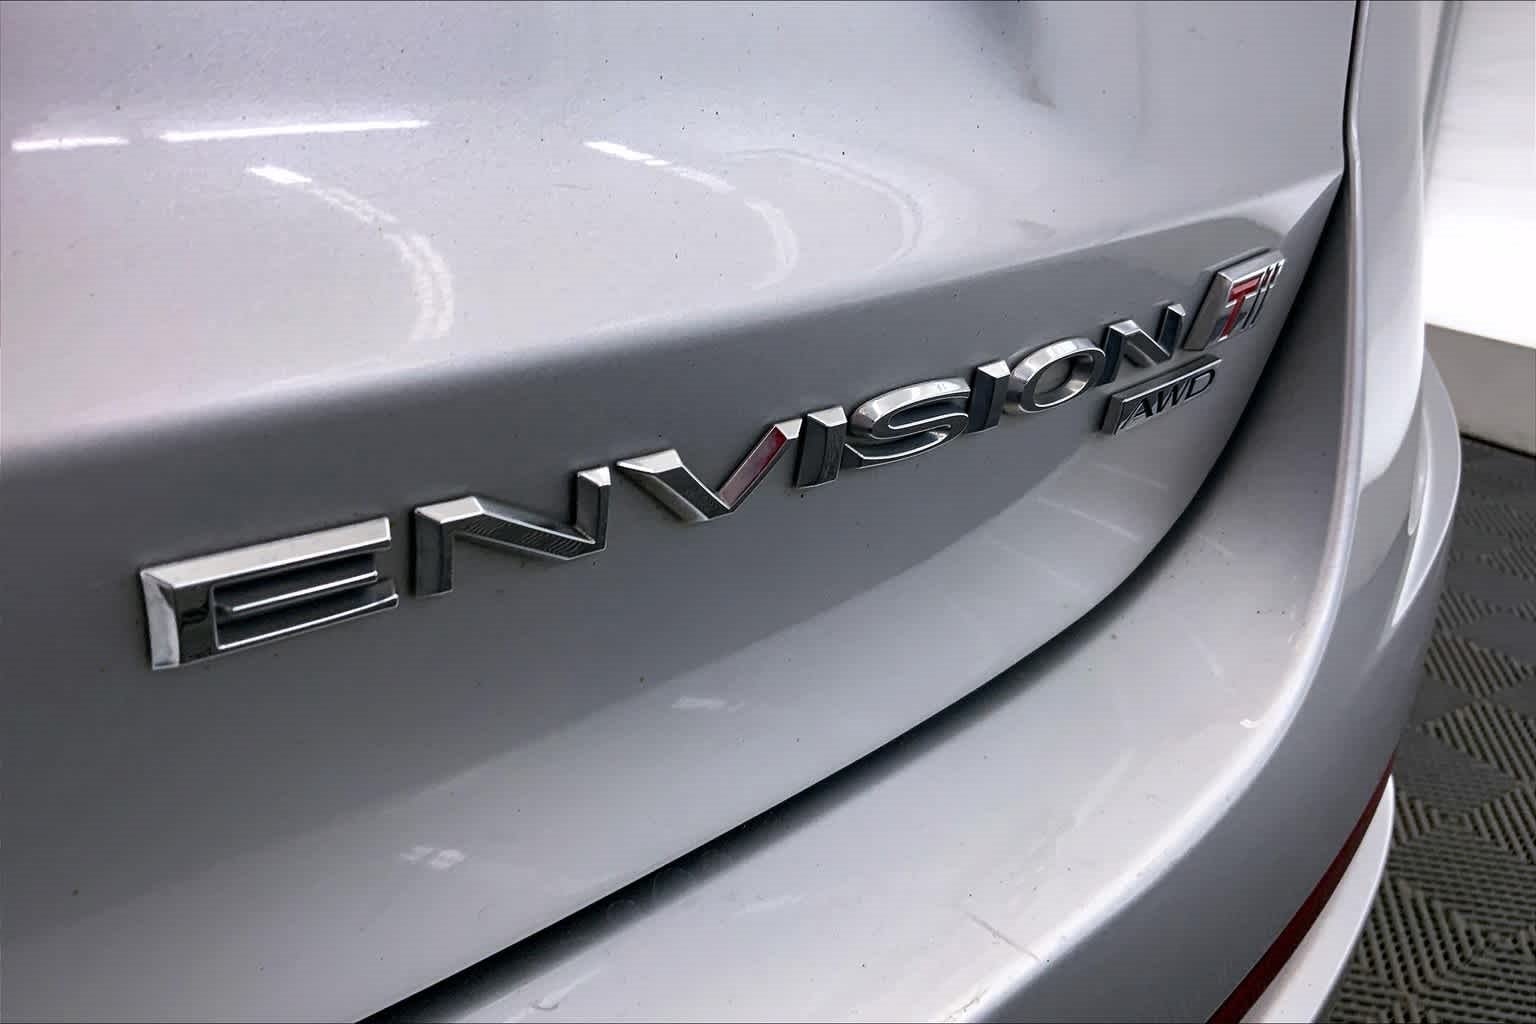 2019 Buick Envision Premium